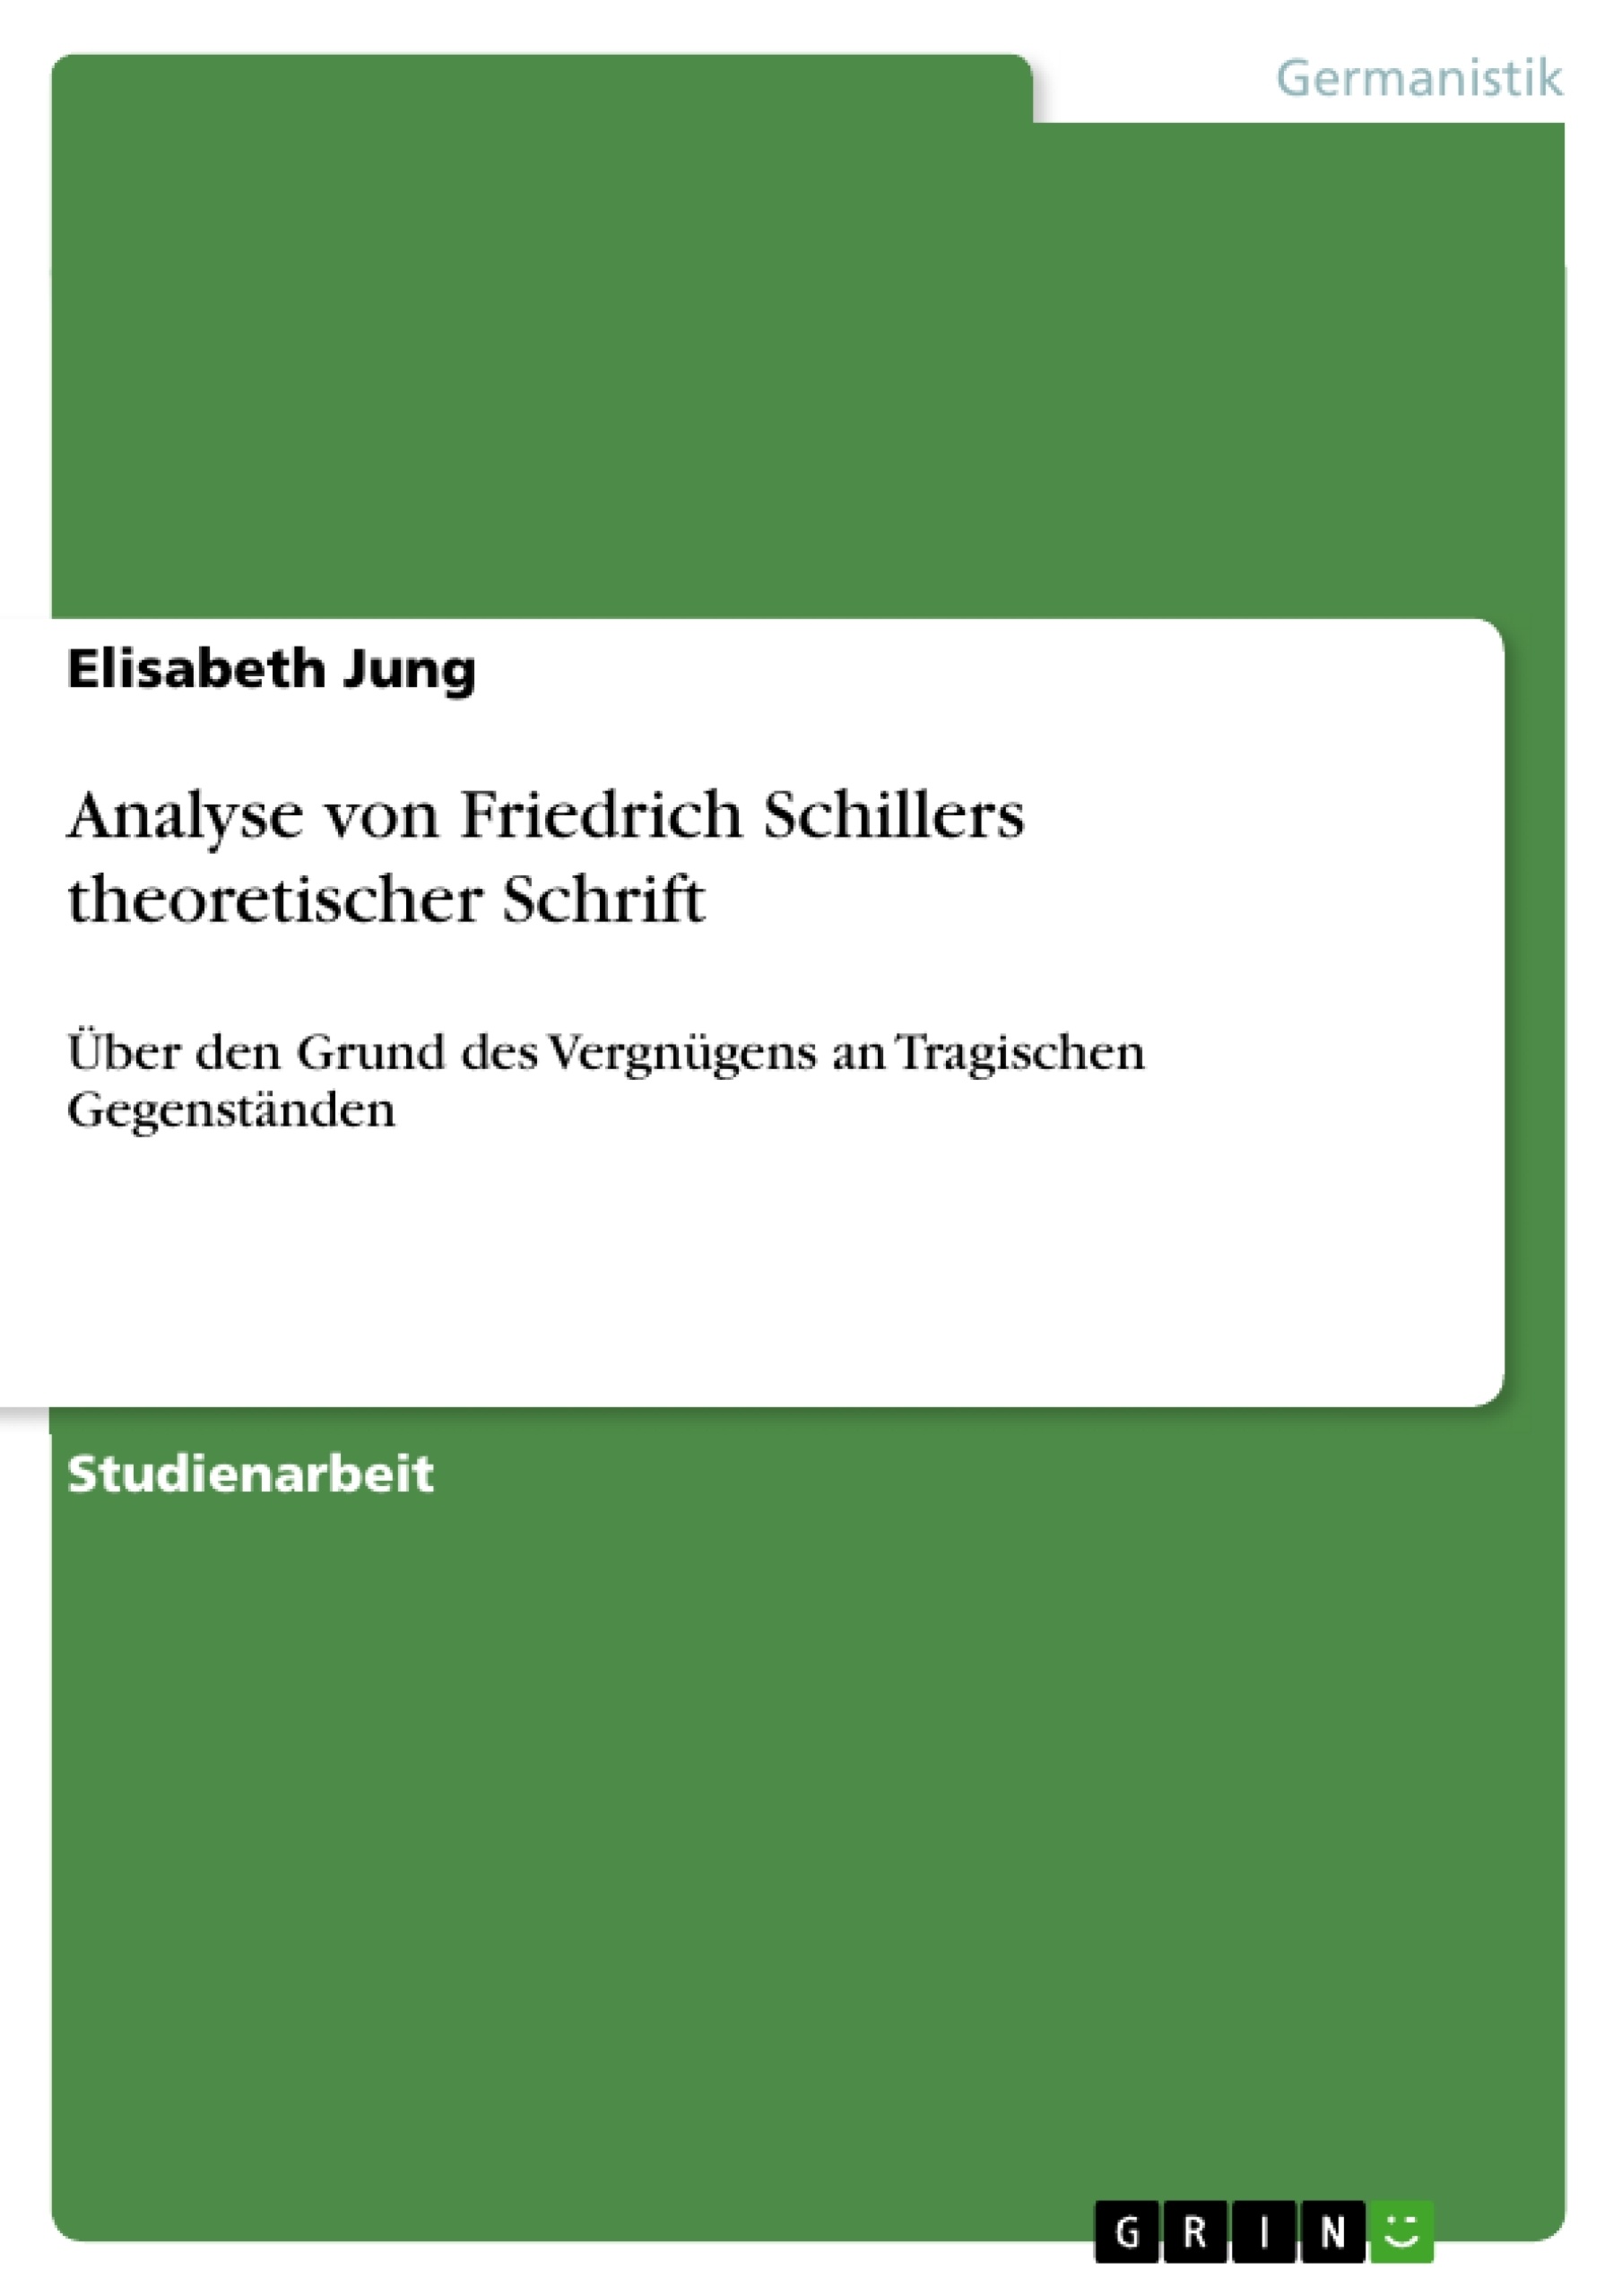 Title: Analyse von Friedrich Schillers theoretischer Schrift 